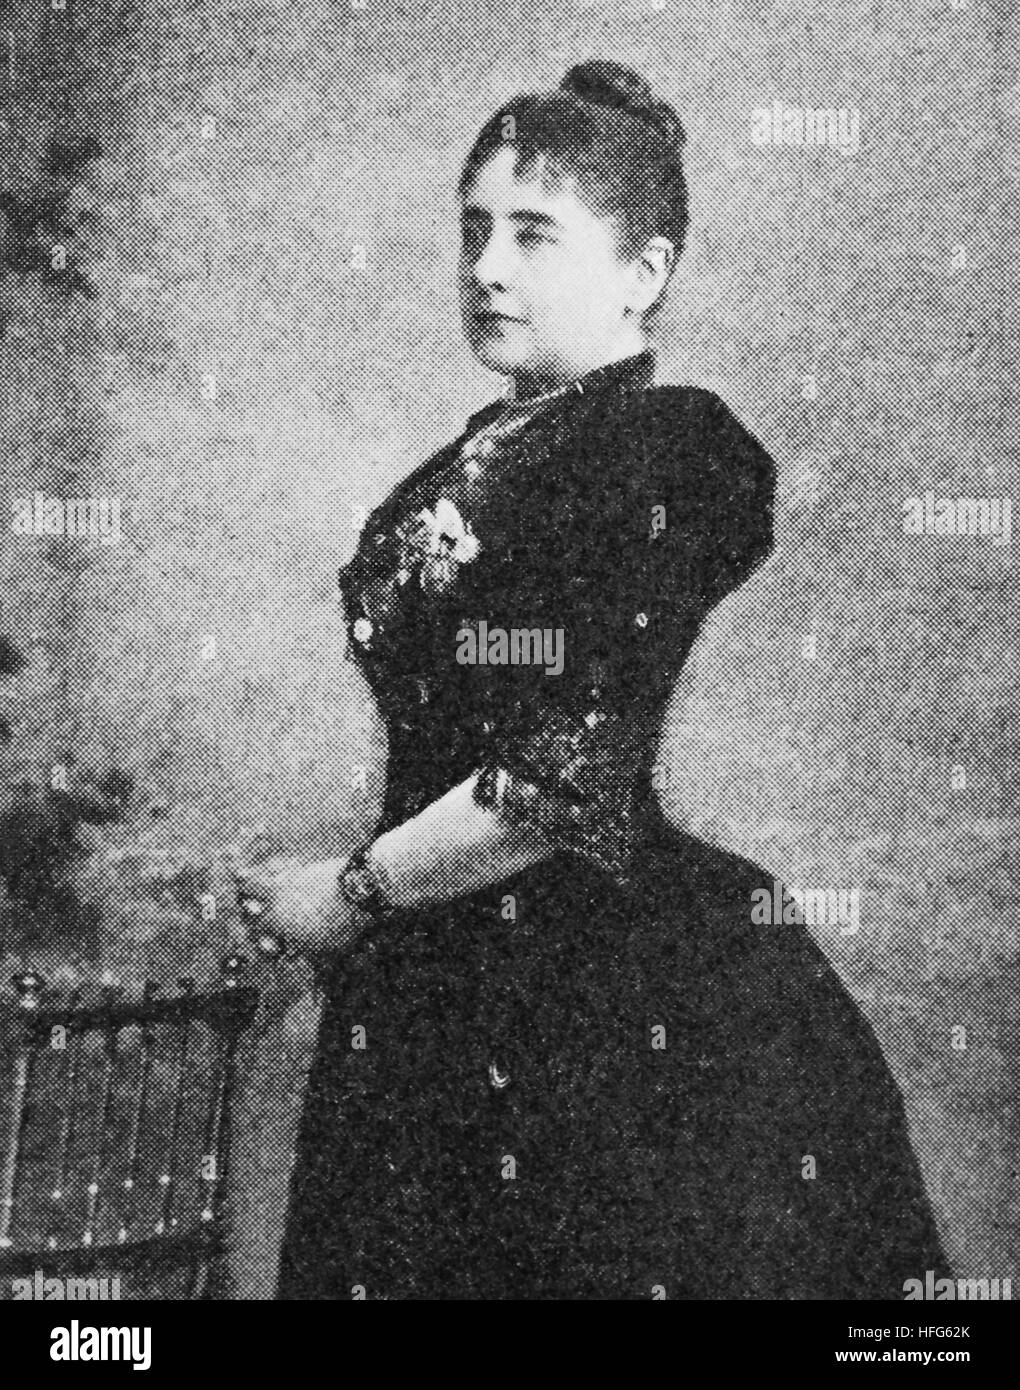 Pauline Lucc, 1841 - 1908, était un soprano d', reproduction photo de l'année 1895, l'amélioration numérique Banque D'Images